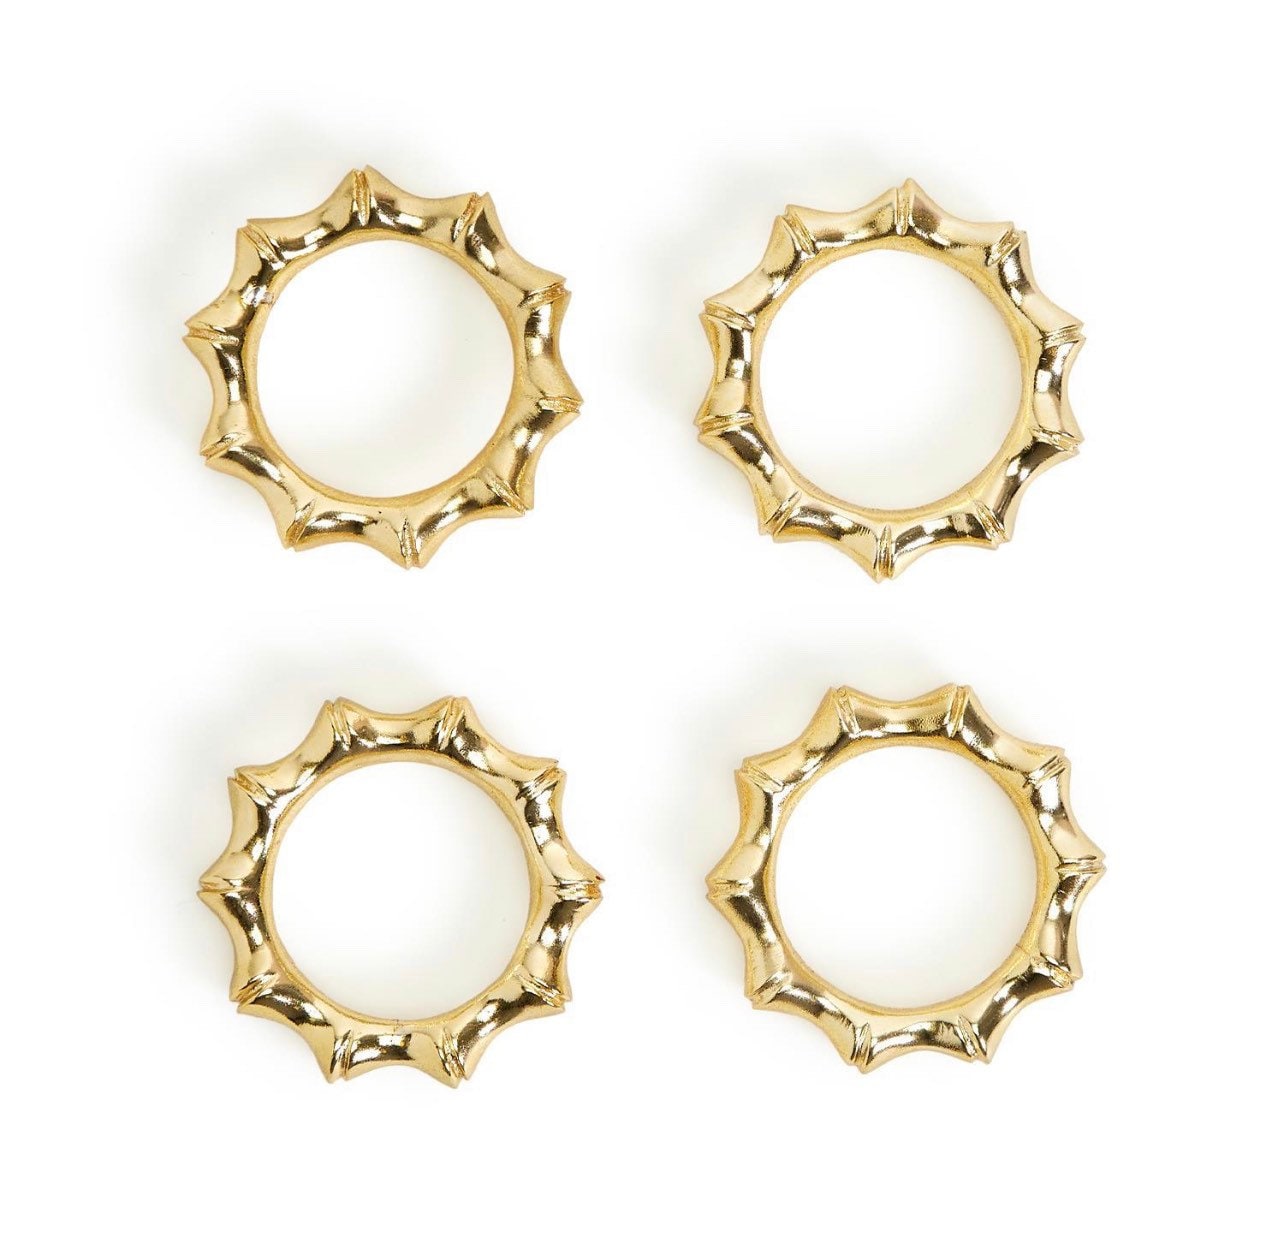 Golden bamboo napkin rings set of 4